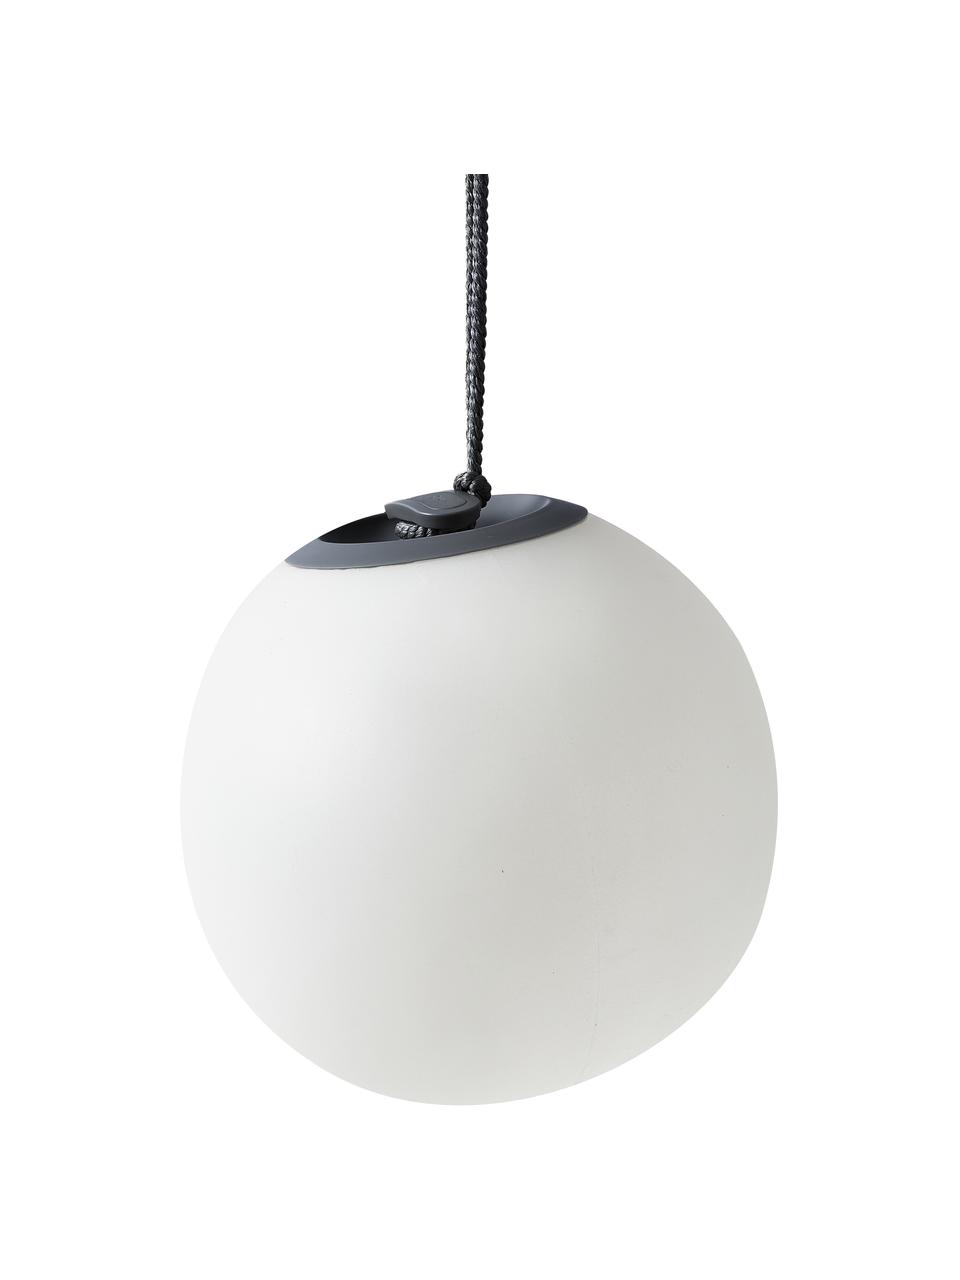 Binnenshuis Renaissance Poging Mobiele dimbare LED hanglamp Norai met kleurverandering en afstandsbediening  | Westwing